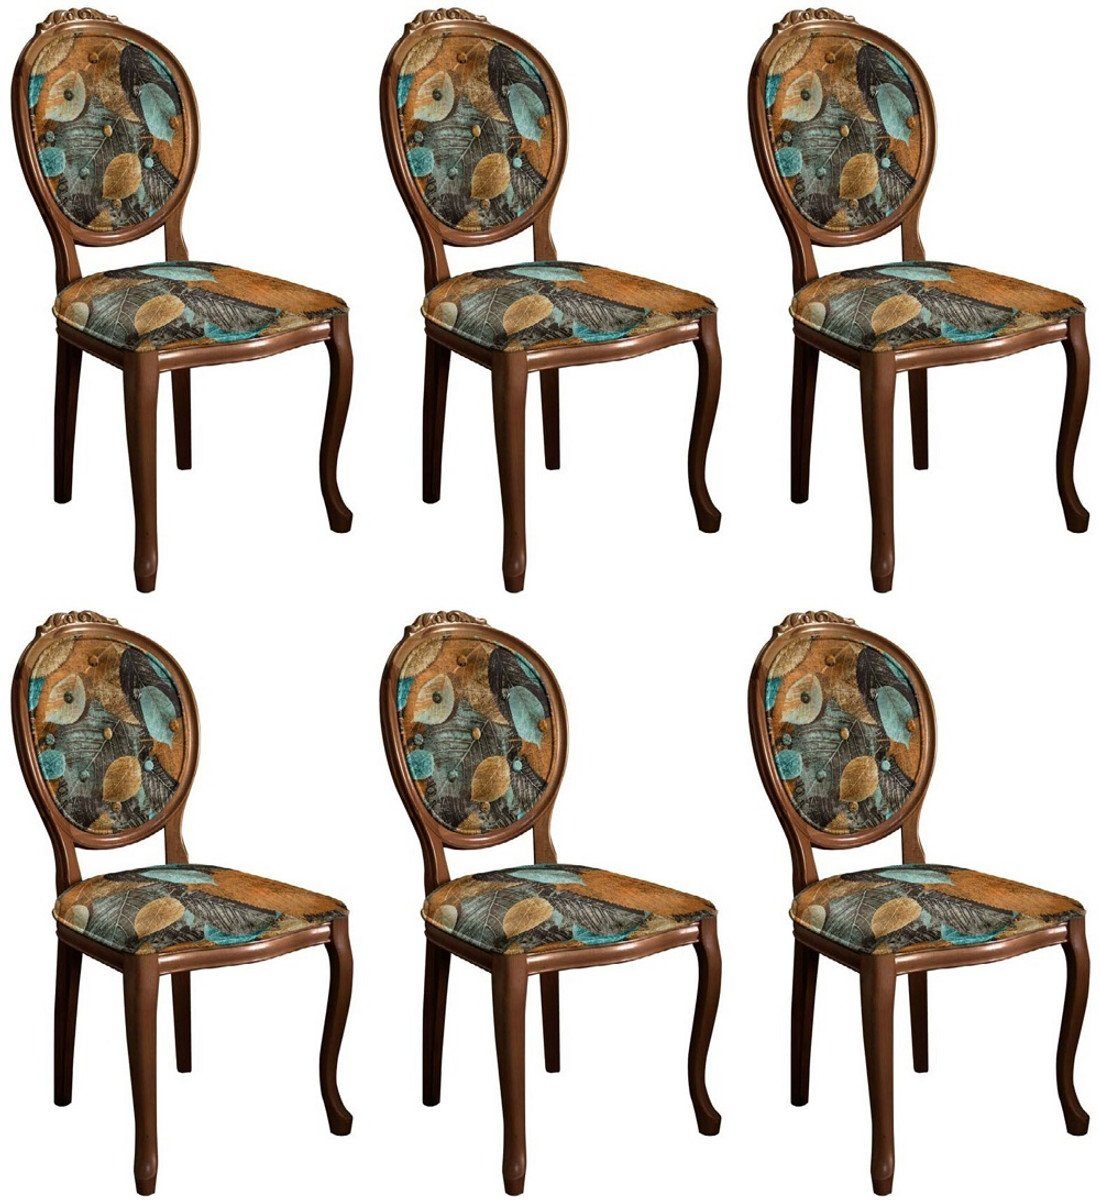 Casa Padrino Esszimmerstuhl Barock Esszimmerstuhl Set mit elegantem Design Mehrfarbig / Braun - 6 Handgefertigte Küchen Stühle im Barockstil - Barock Esszimmer Möbel